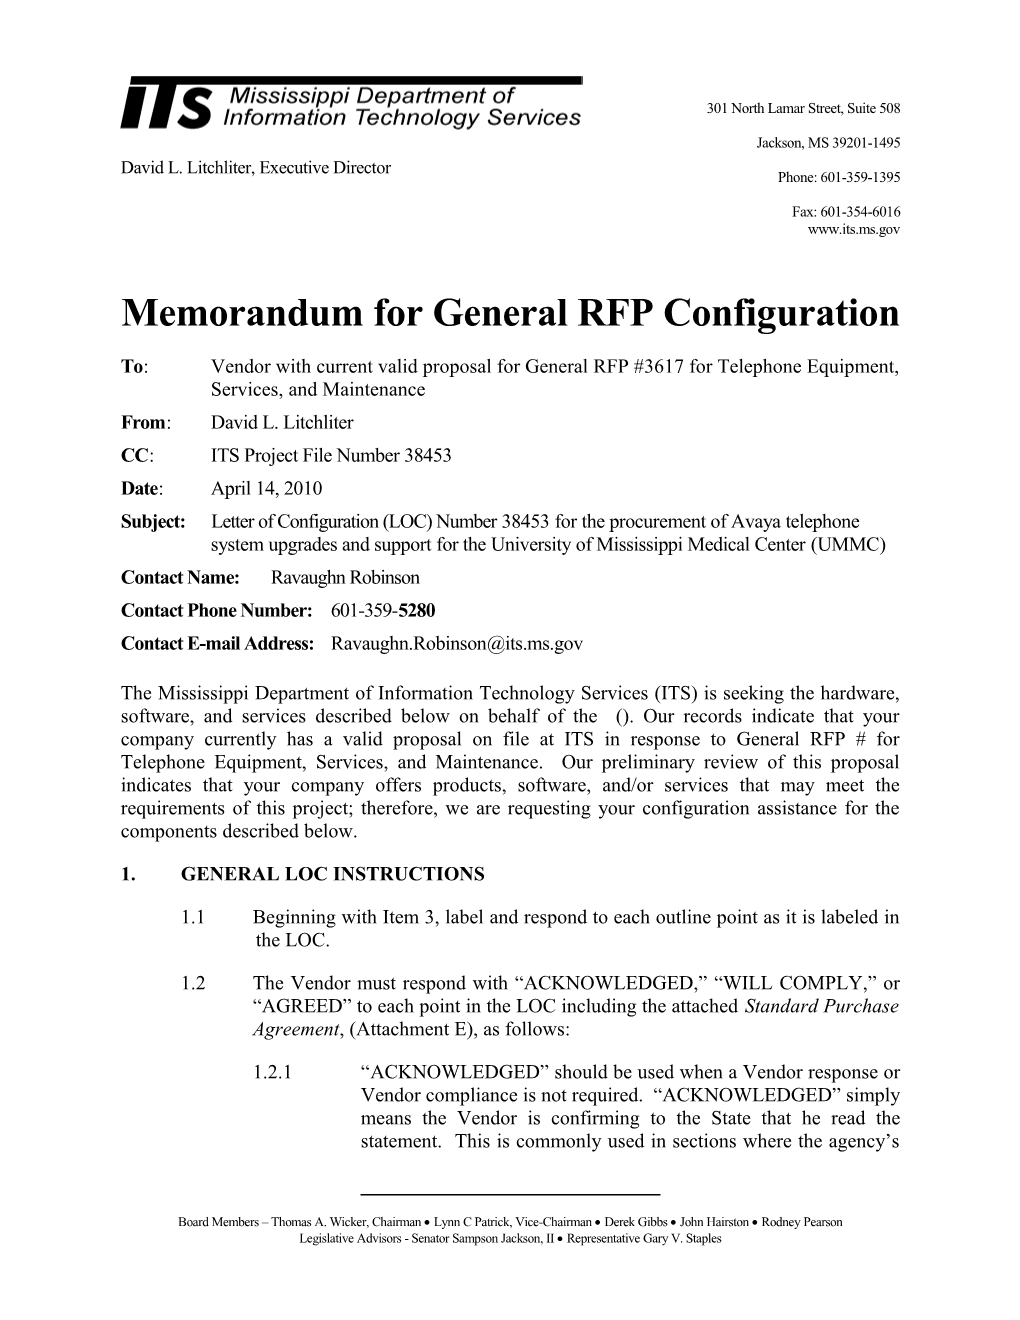 Memorandum for General RFP Configuration s6